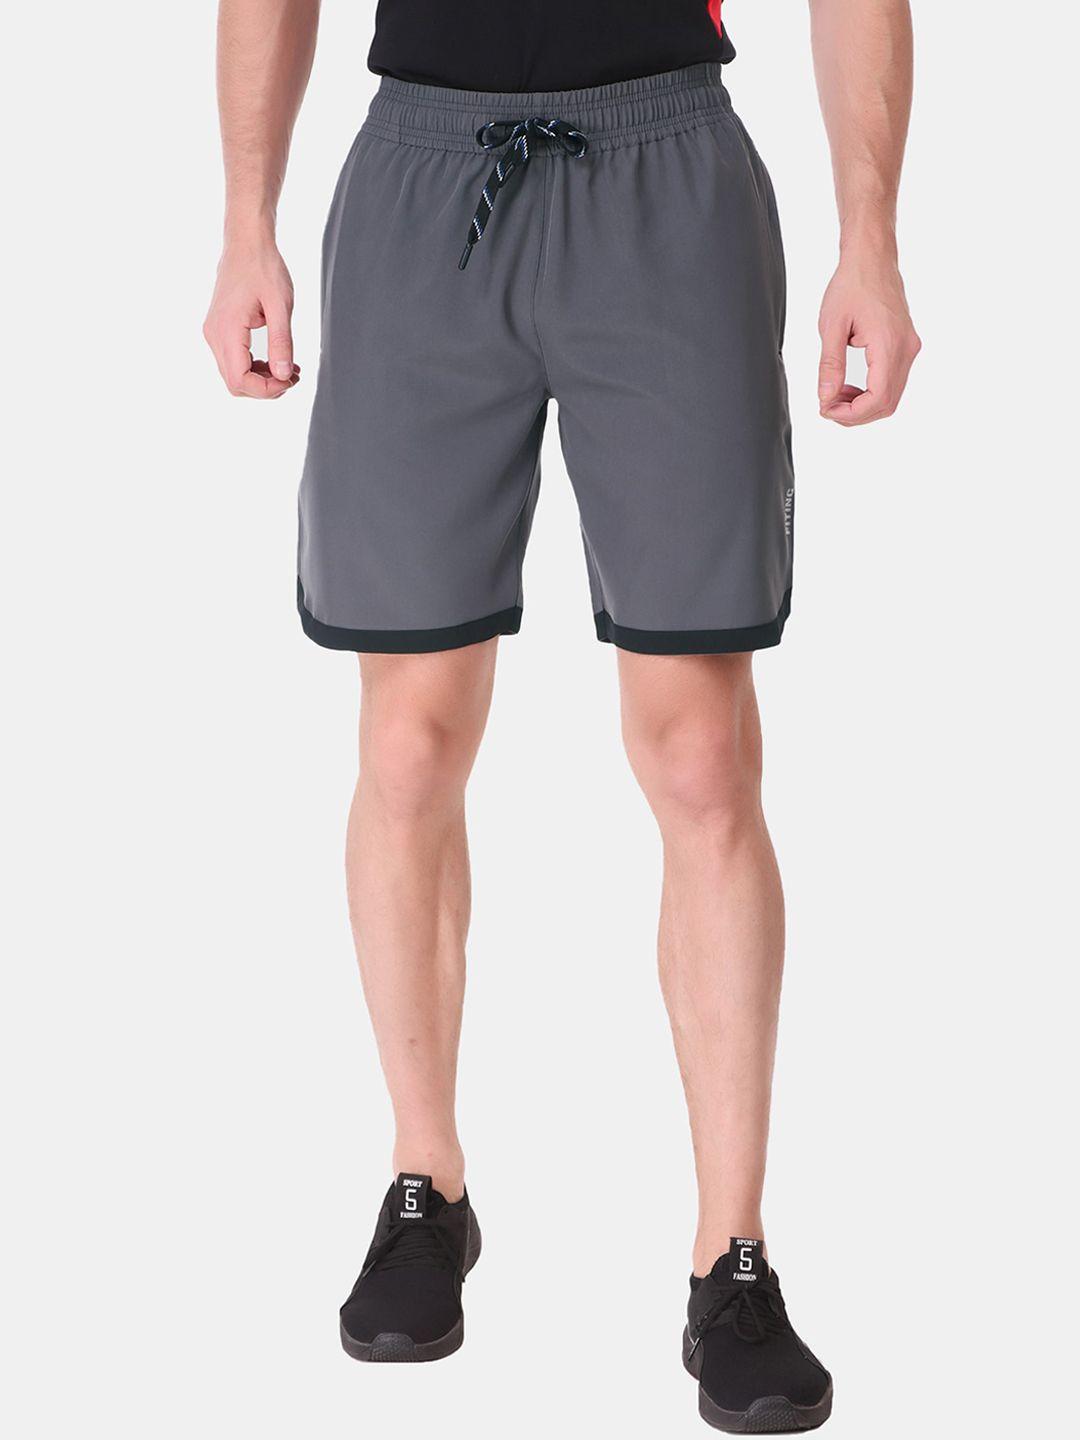 fitinc men grey running sports shorts